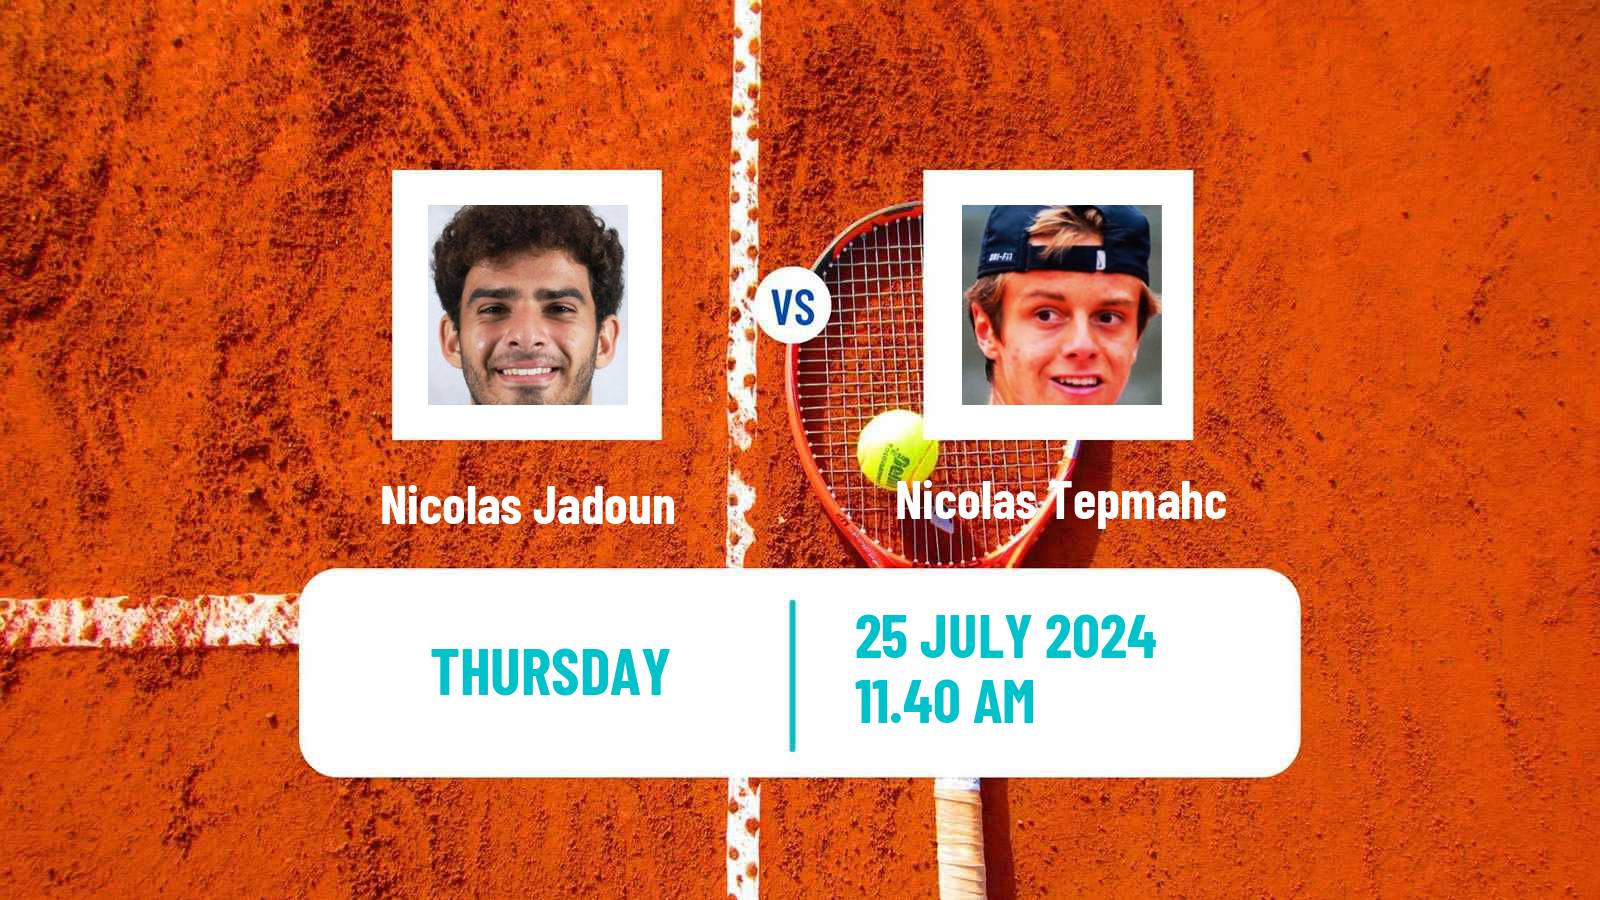 Tennis ITF M15 Rognac Men Nicolas Jadoun - Nicolas Tepmahc